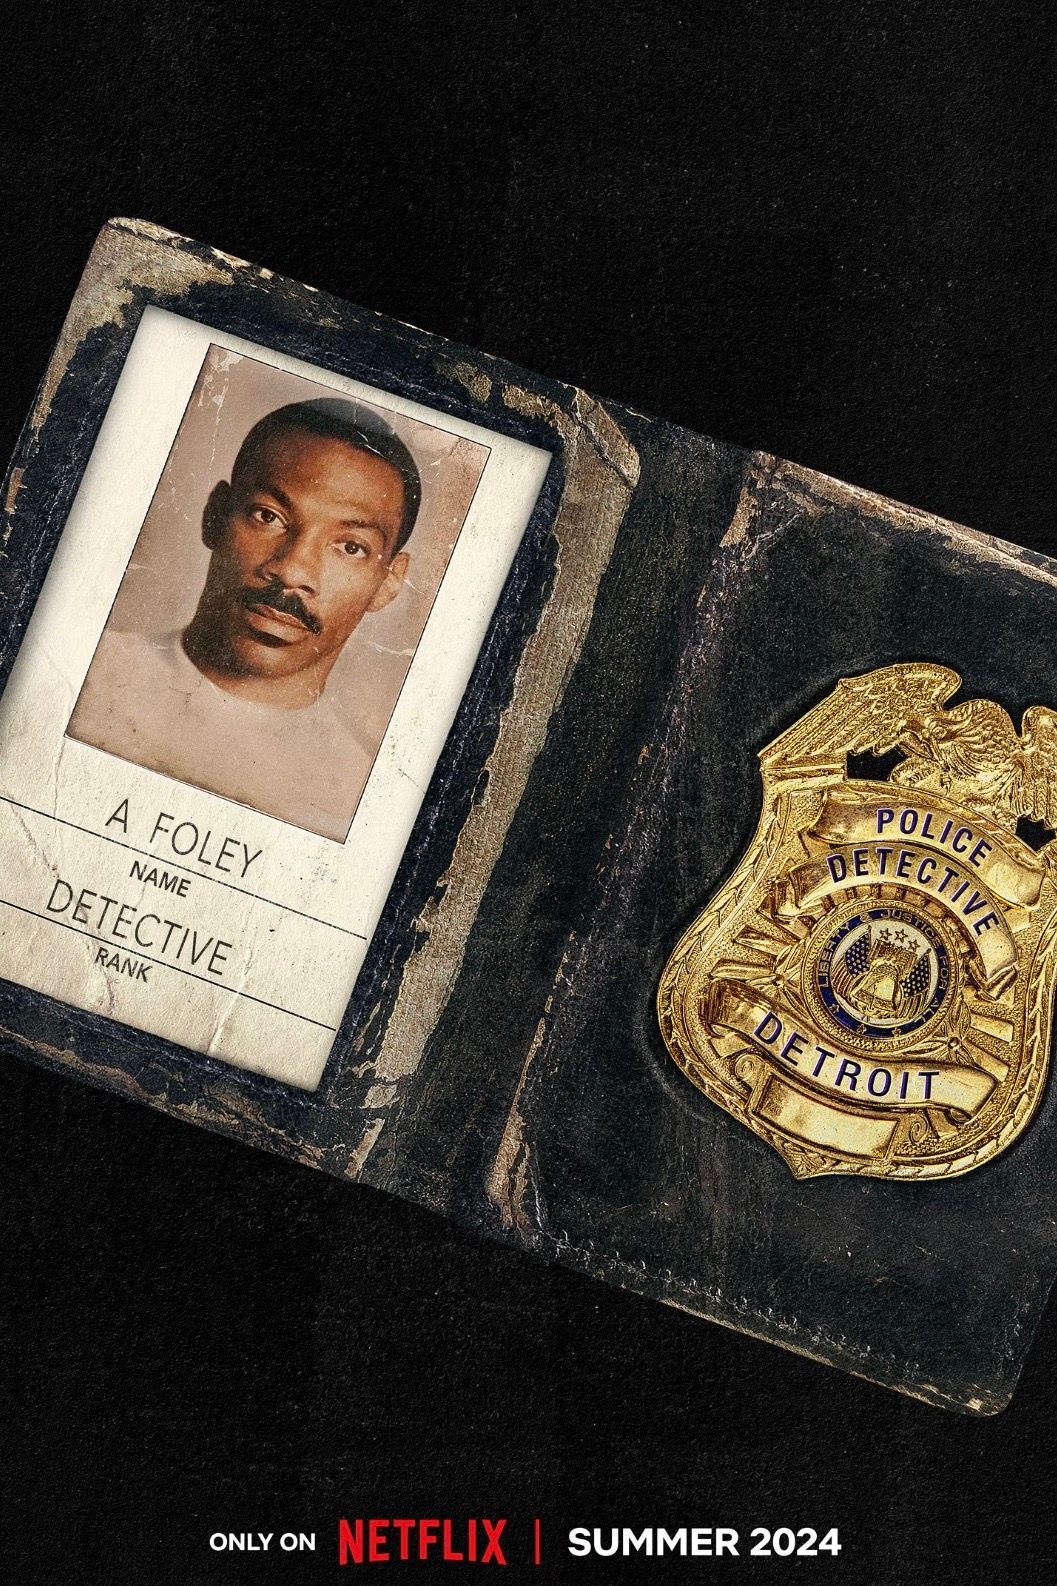 Pôster do filme do policial de Beverly Hills, Axel Foley, com Eddie Murphy em um distintivo da polícia